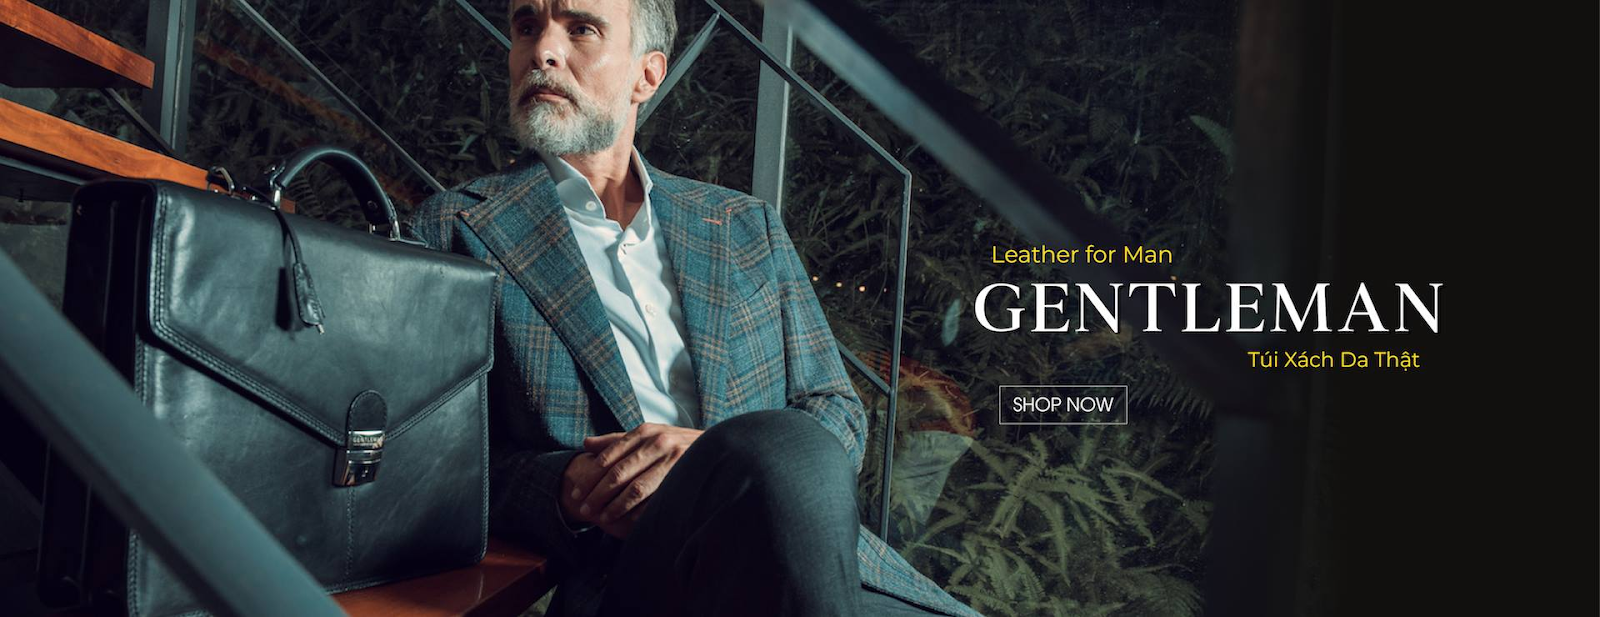 Gentleman là  thương hiệu sản xuất đồ da số một tại Việt Nam